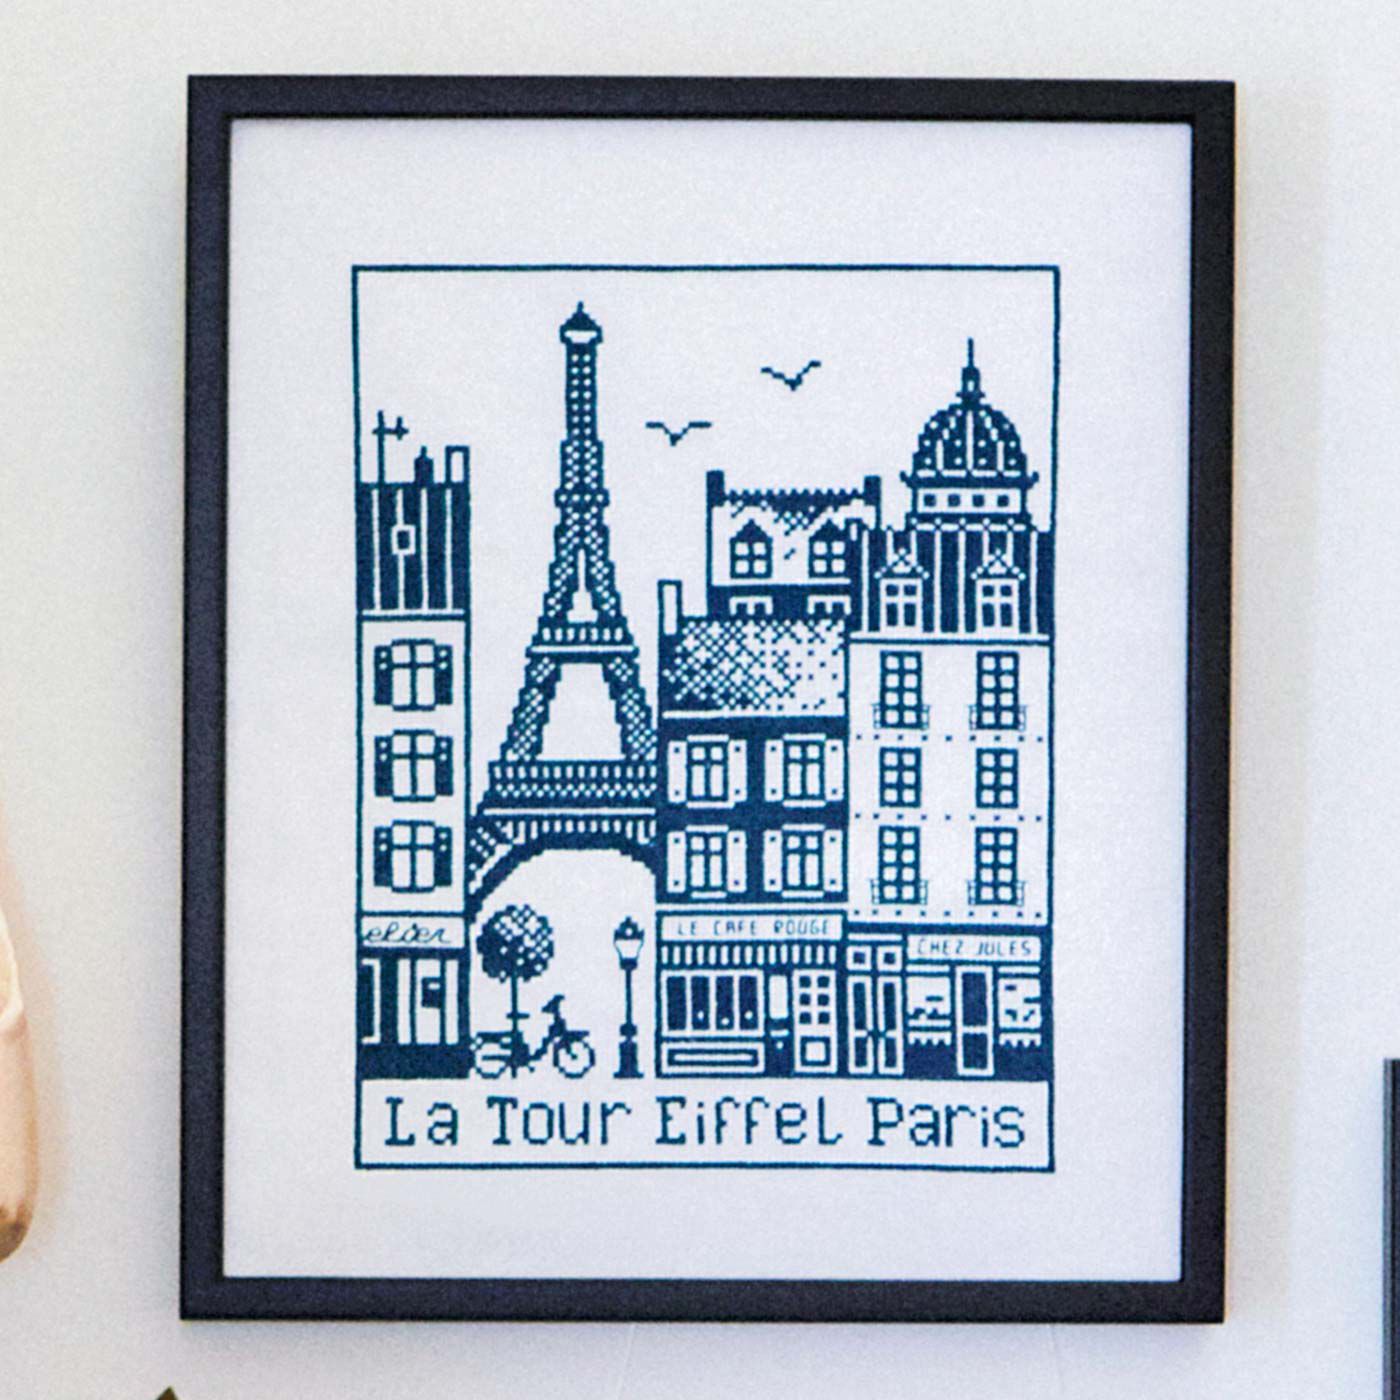 クチュリエ|パリの街並みをモノクロームで描くクロスステッチ|La Tour Eiffel：エッフェル塔